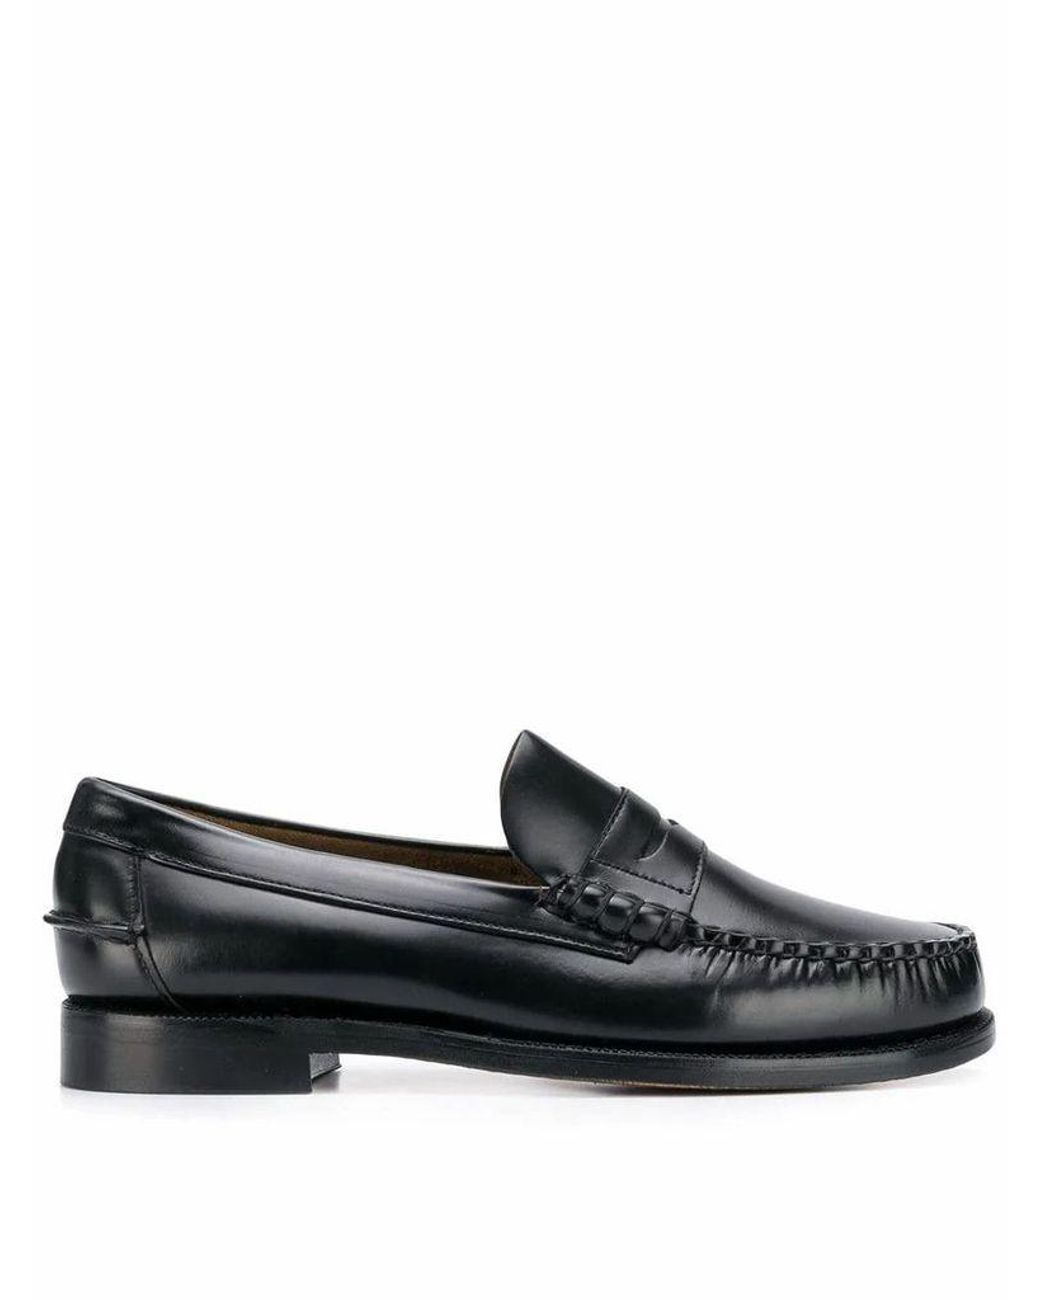 Sebago Men's 7000300902 Black Leather Loafers for Men - Lyst